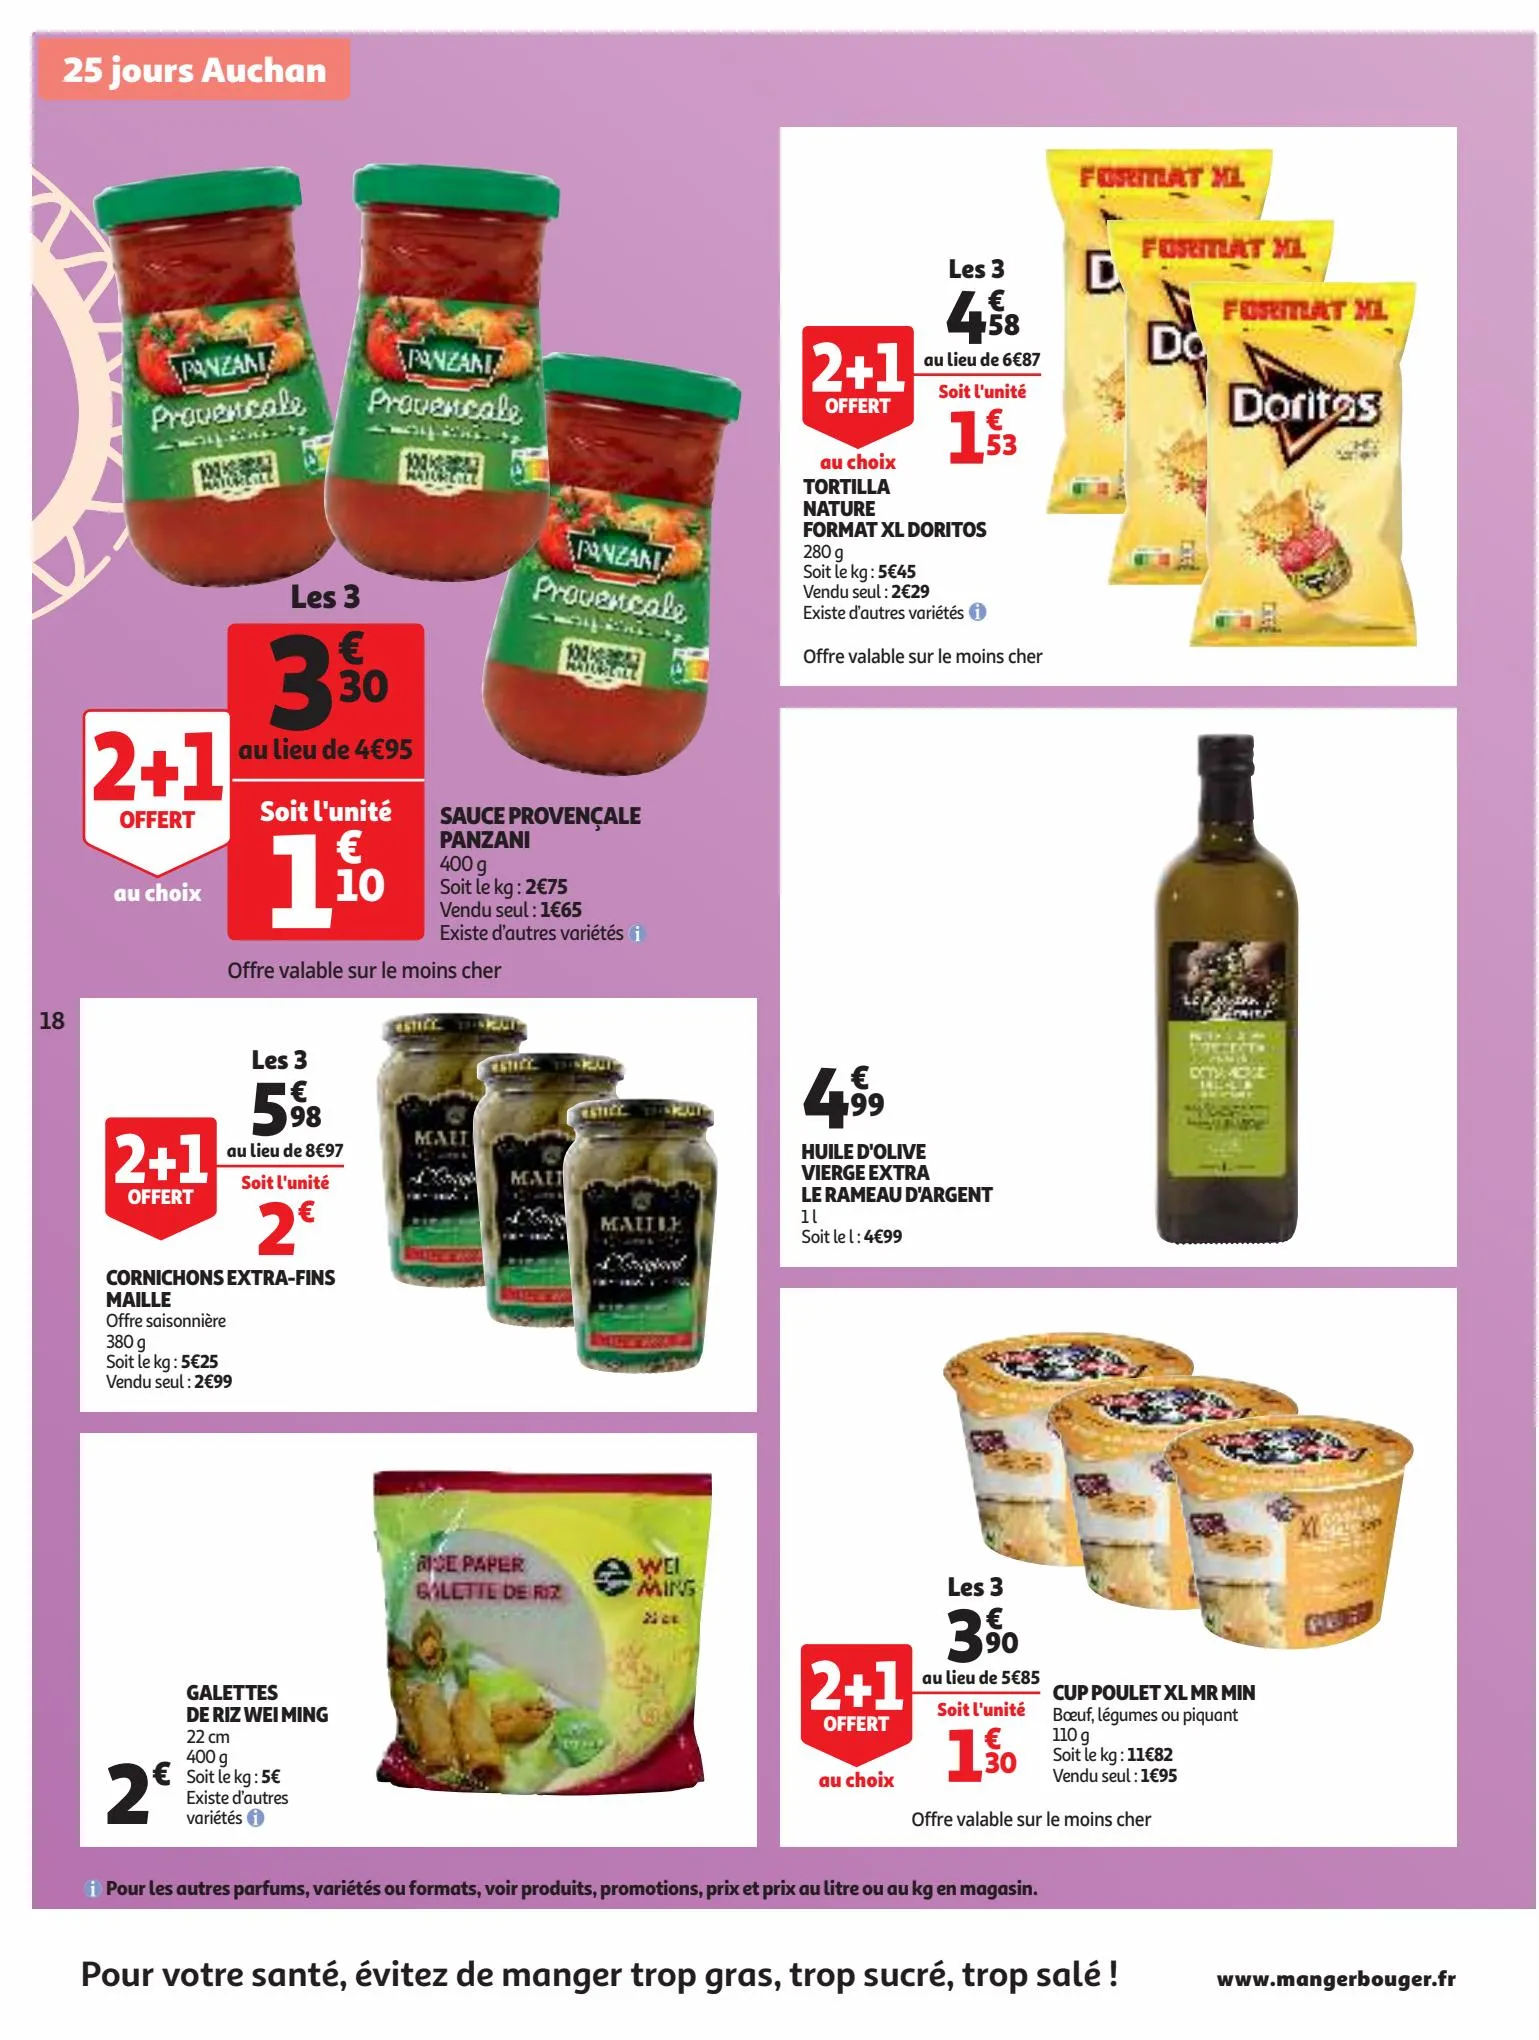 Catalogue 25 Jours Auchan, page 00018